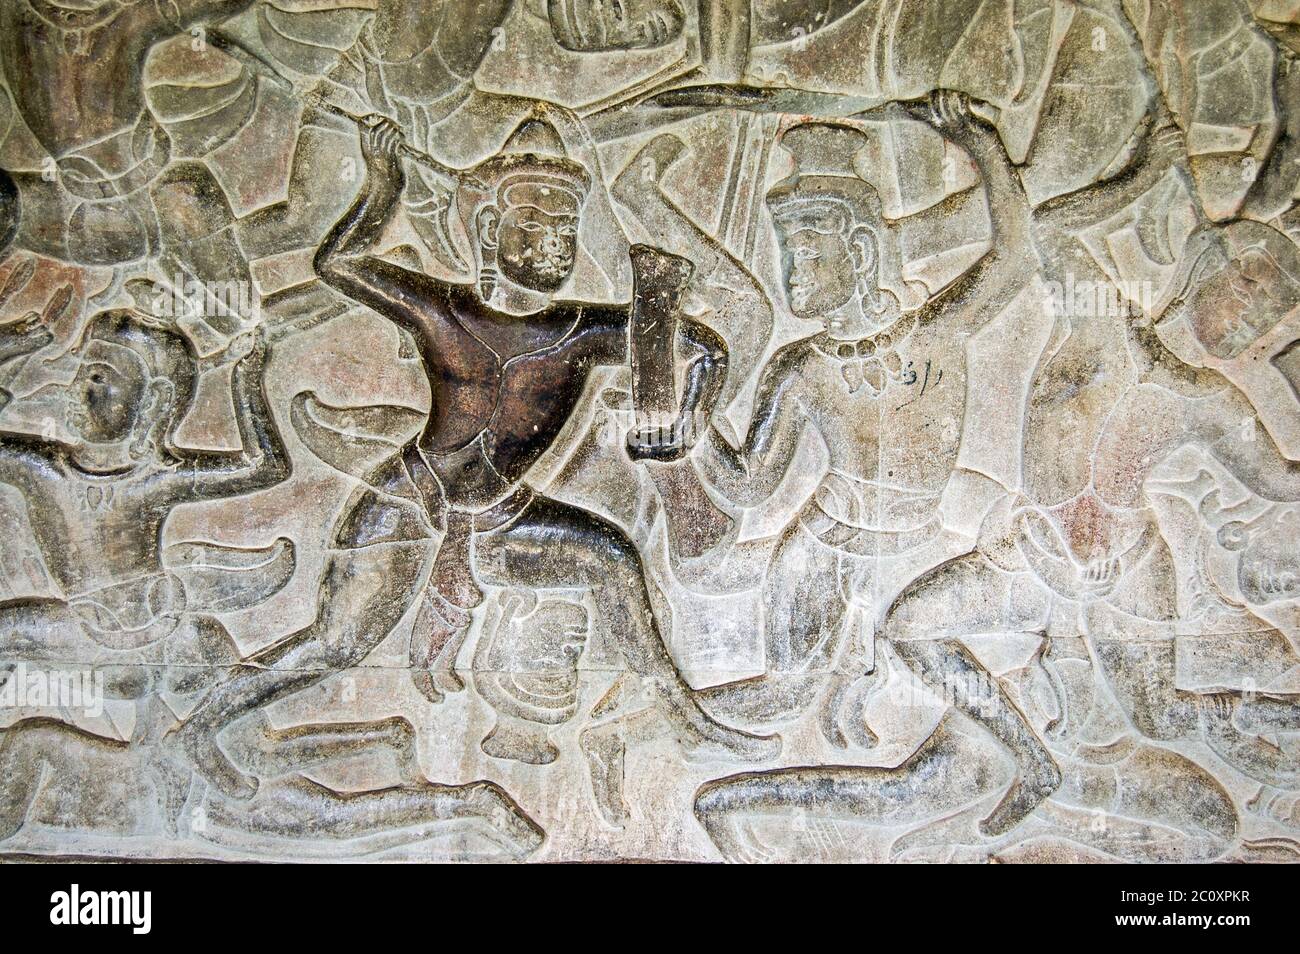 Antico rilievo Khmer bassorilievo di dèi che combattono demoni, diva contro asuras. Parete interna del tempio di Angkor Wat, Siem Reap, Cambogia. Foto Stock